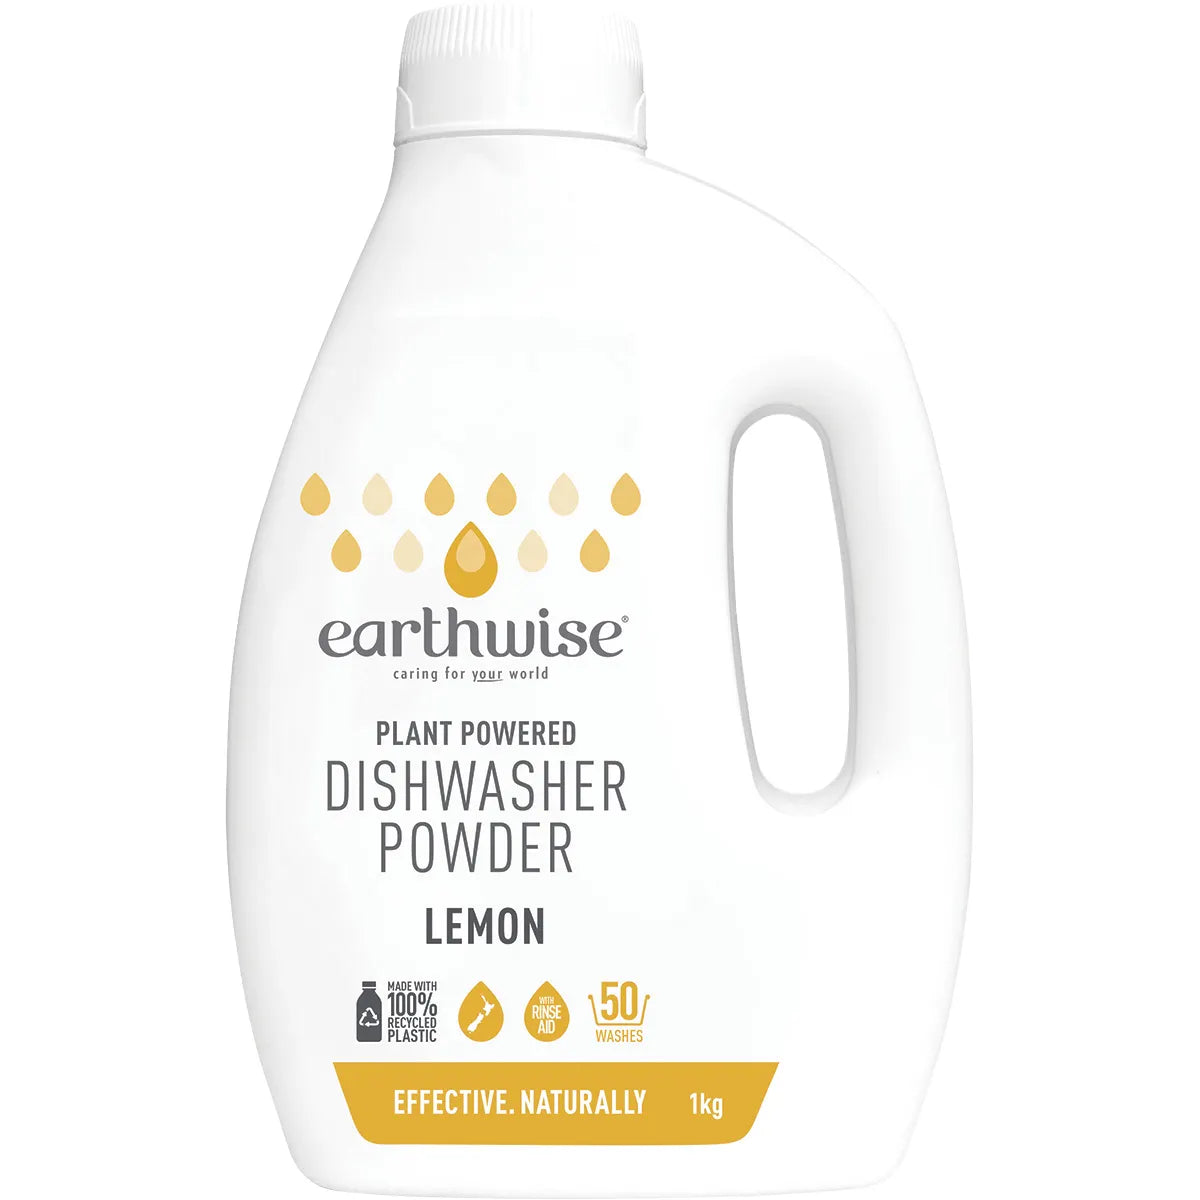 Earthwise Dishwasher Powder Lemon